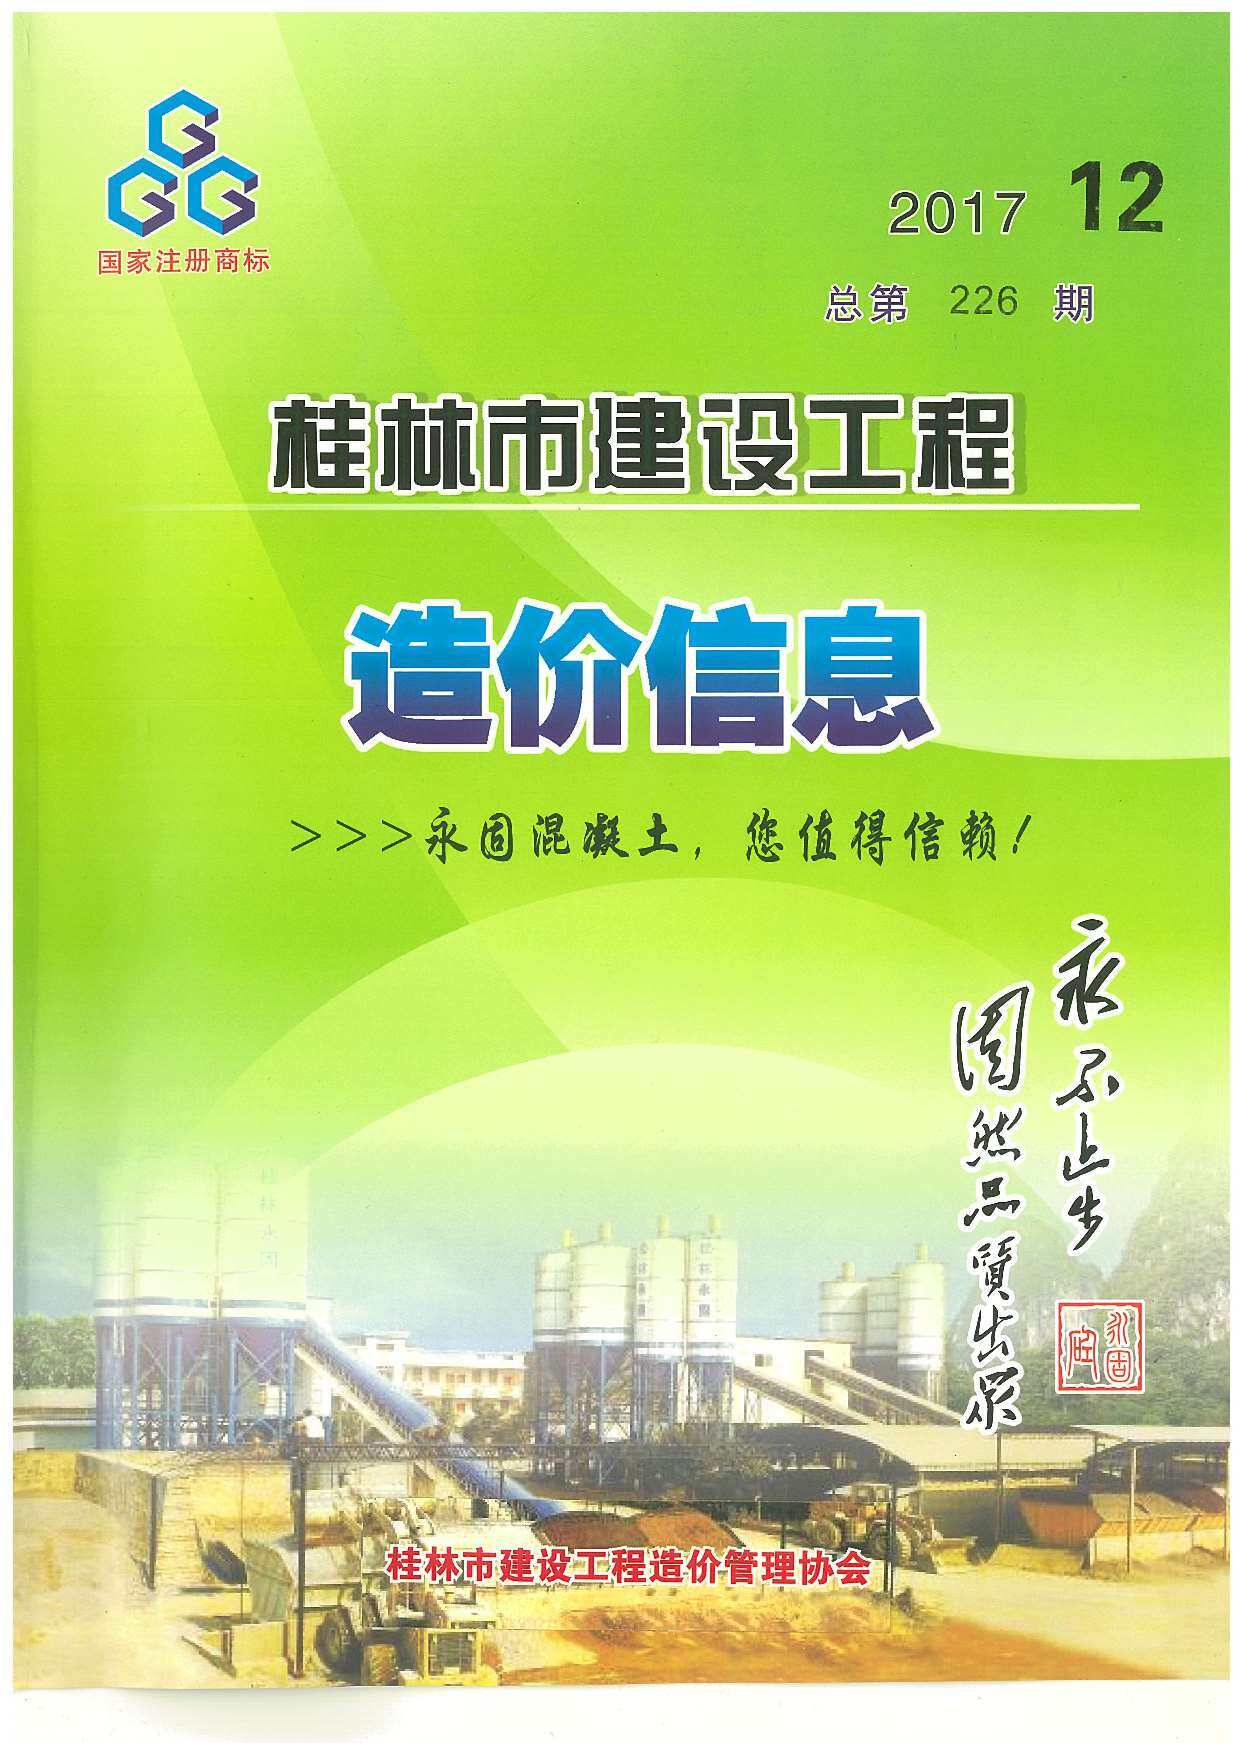 桂林市2017年12月工程造价信息期刊